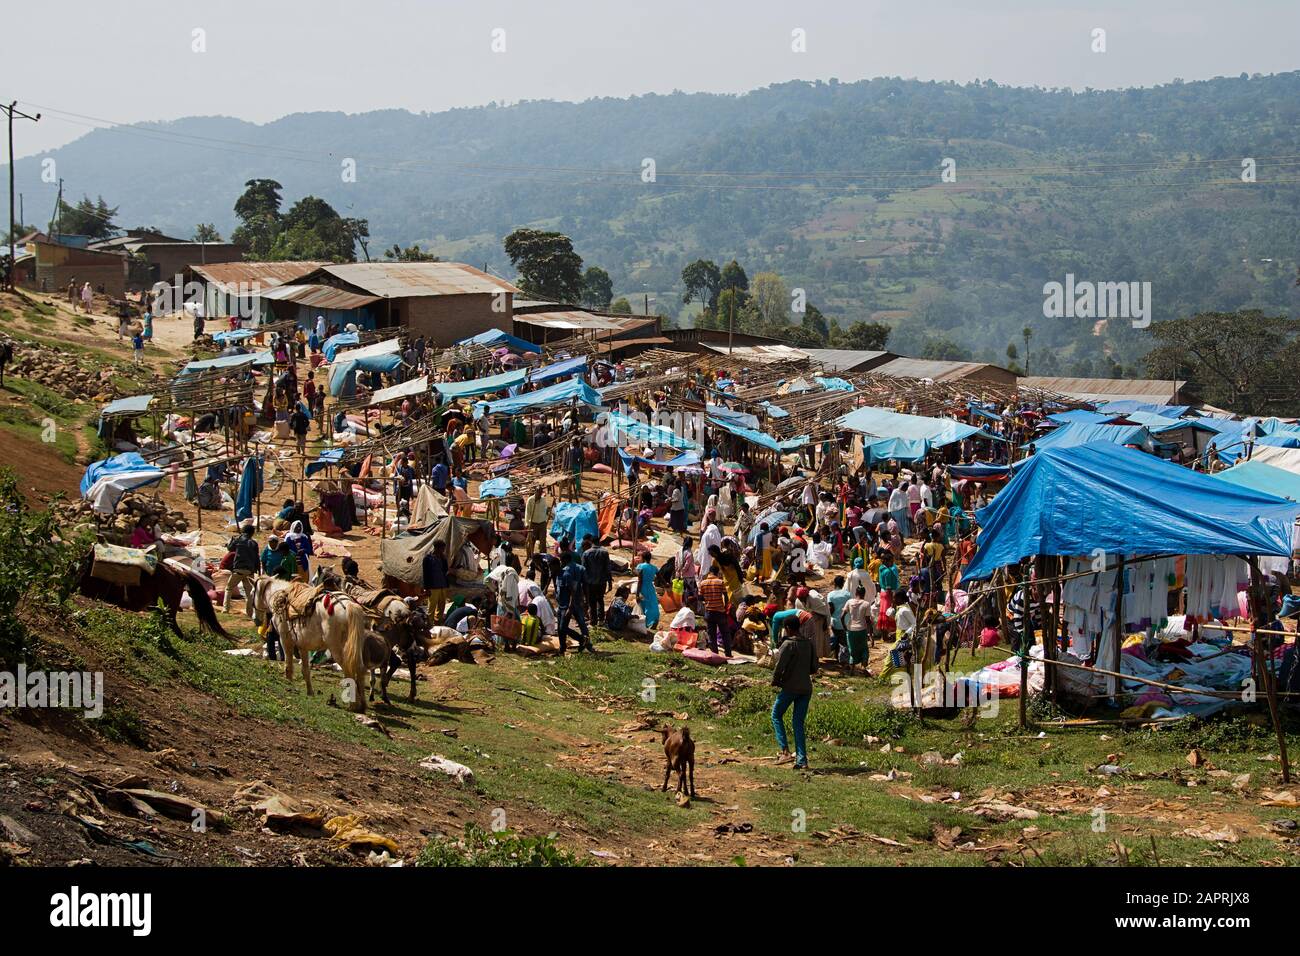 Mercado local de Bonga, en la región de Kaffa, Etiopía Foto de stock